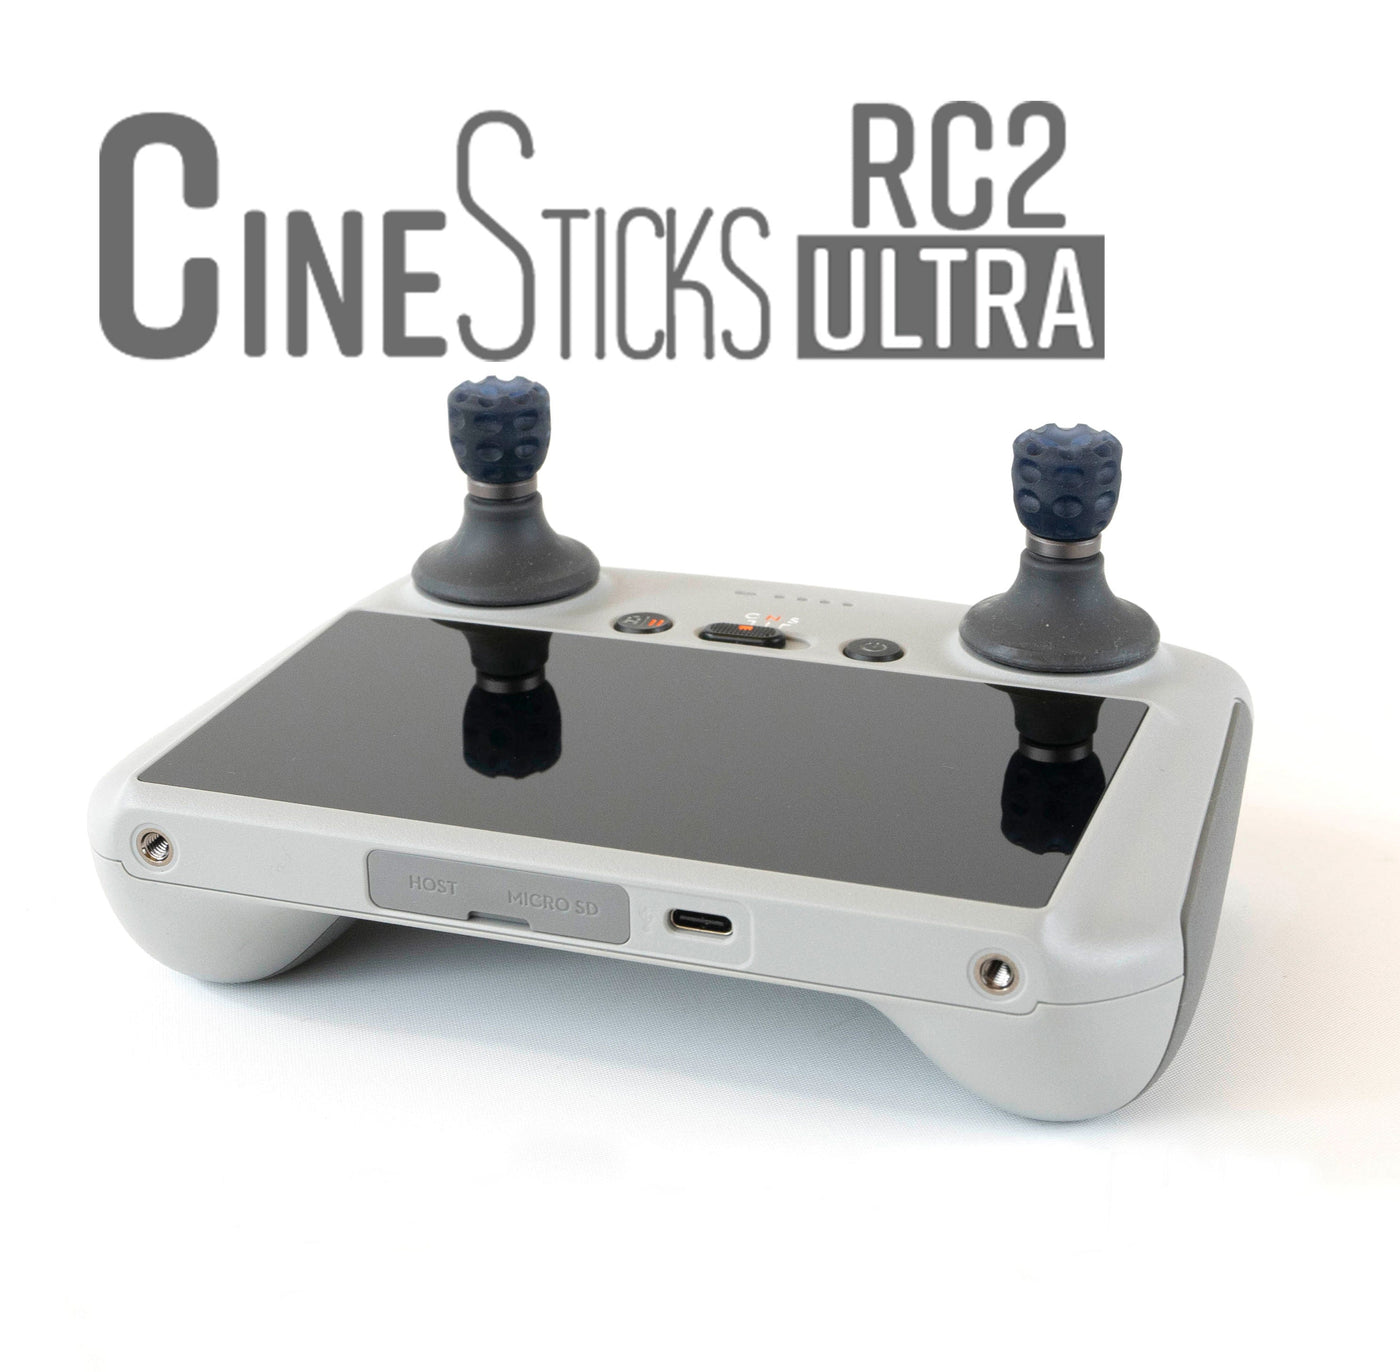 CineSticks RC2 Pro - US